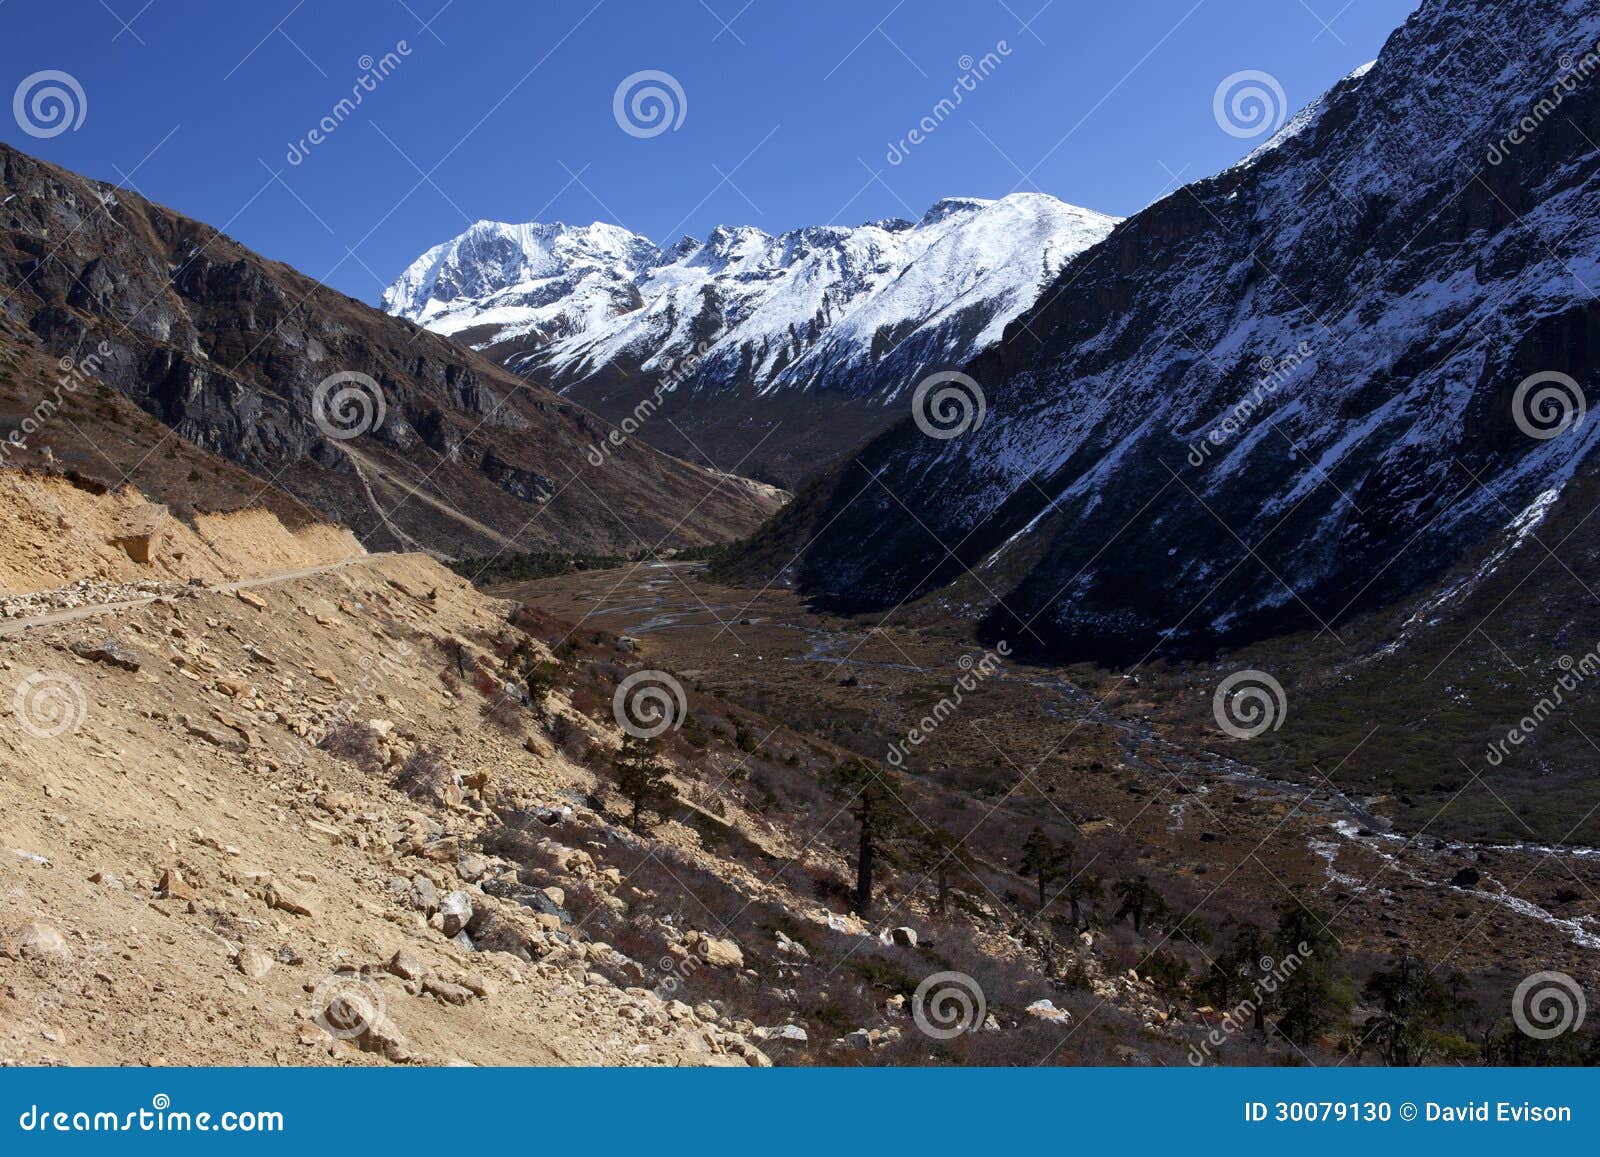 tsopta valley, sikkim.